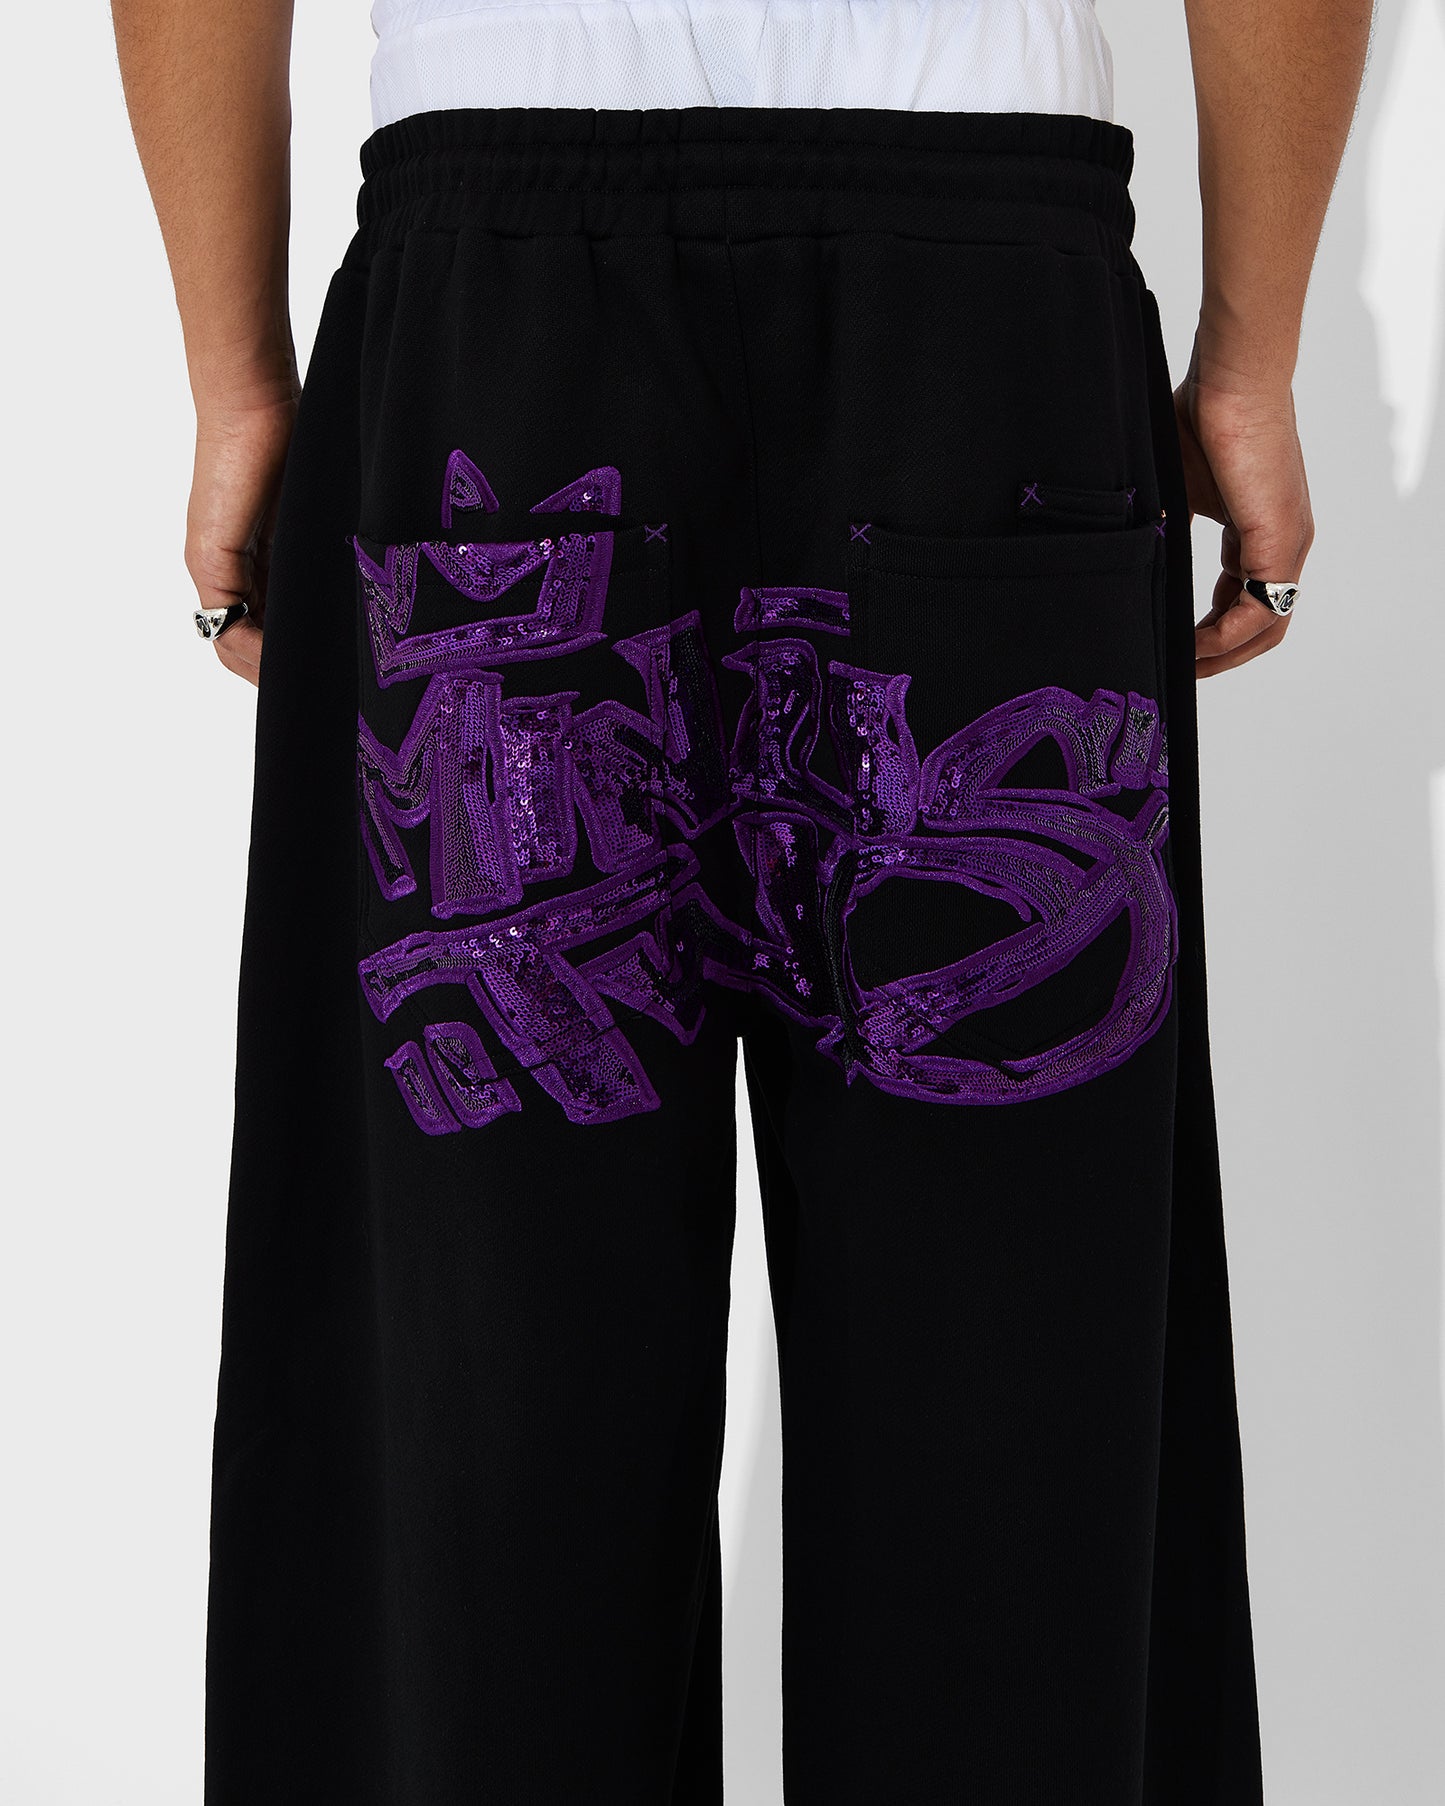 Pantalon de jogging avec logo couronne (logo violet)